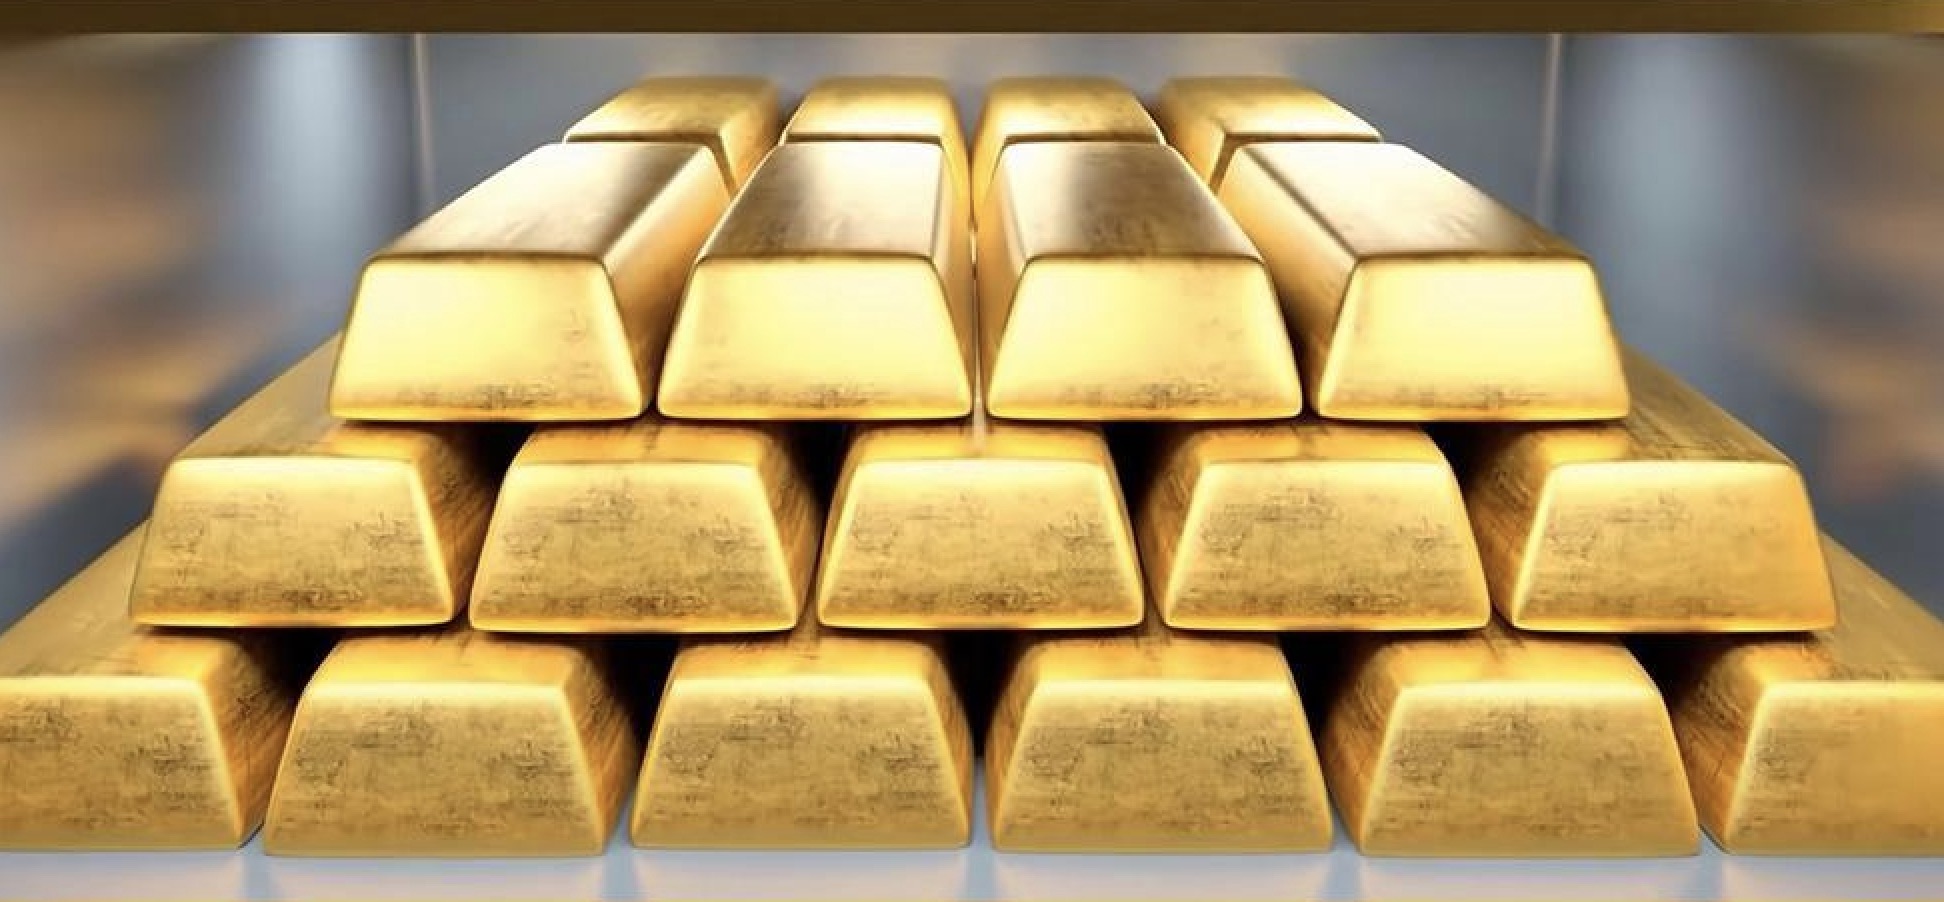 การขึ้นลงของทองคำส่งผลต่อเงินหยวนอย่างไร